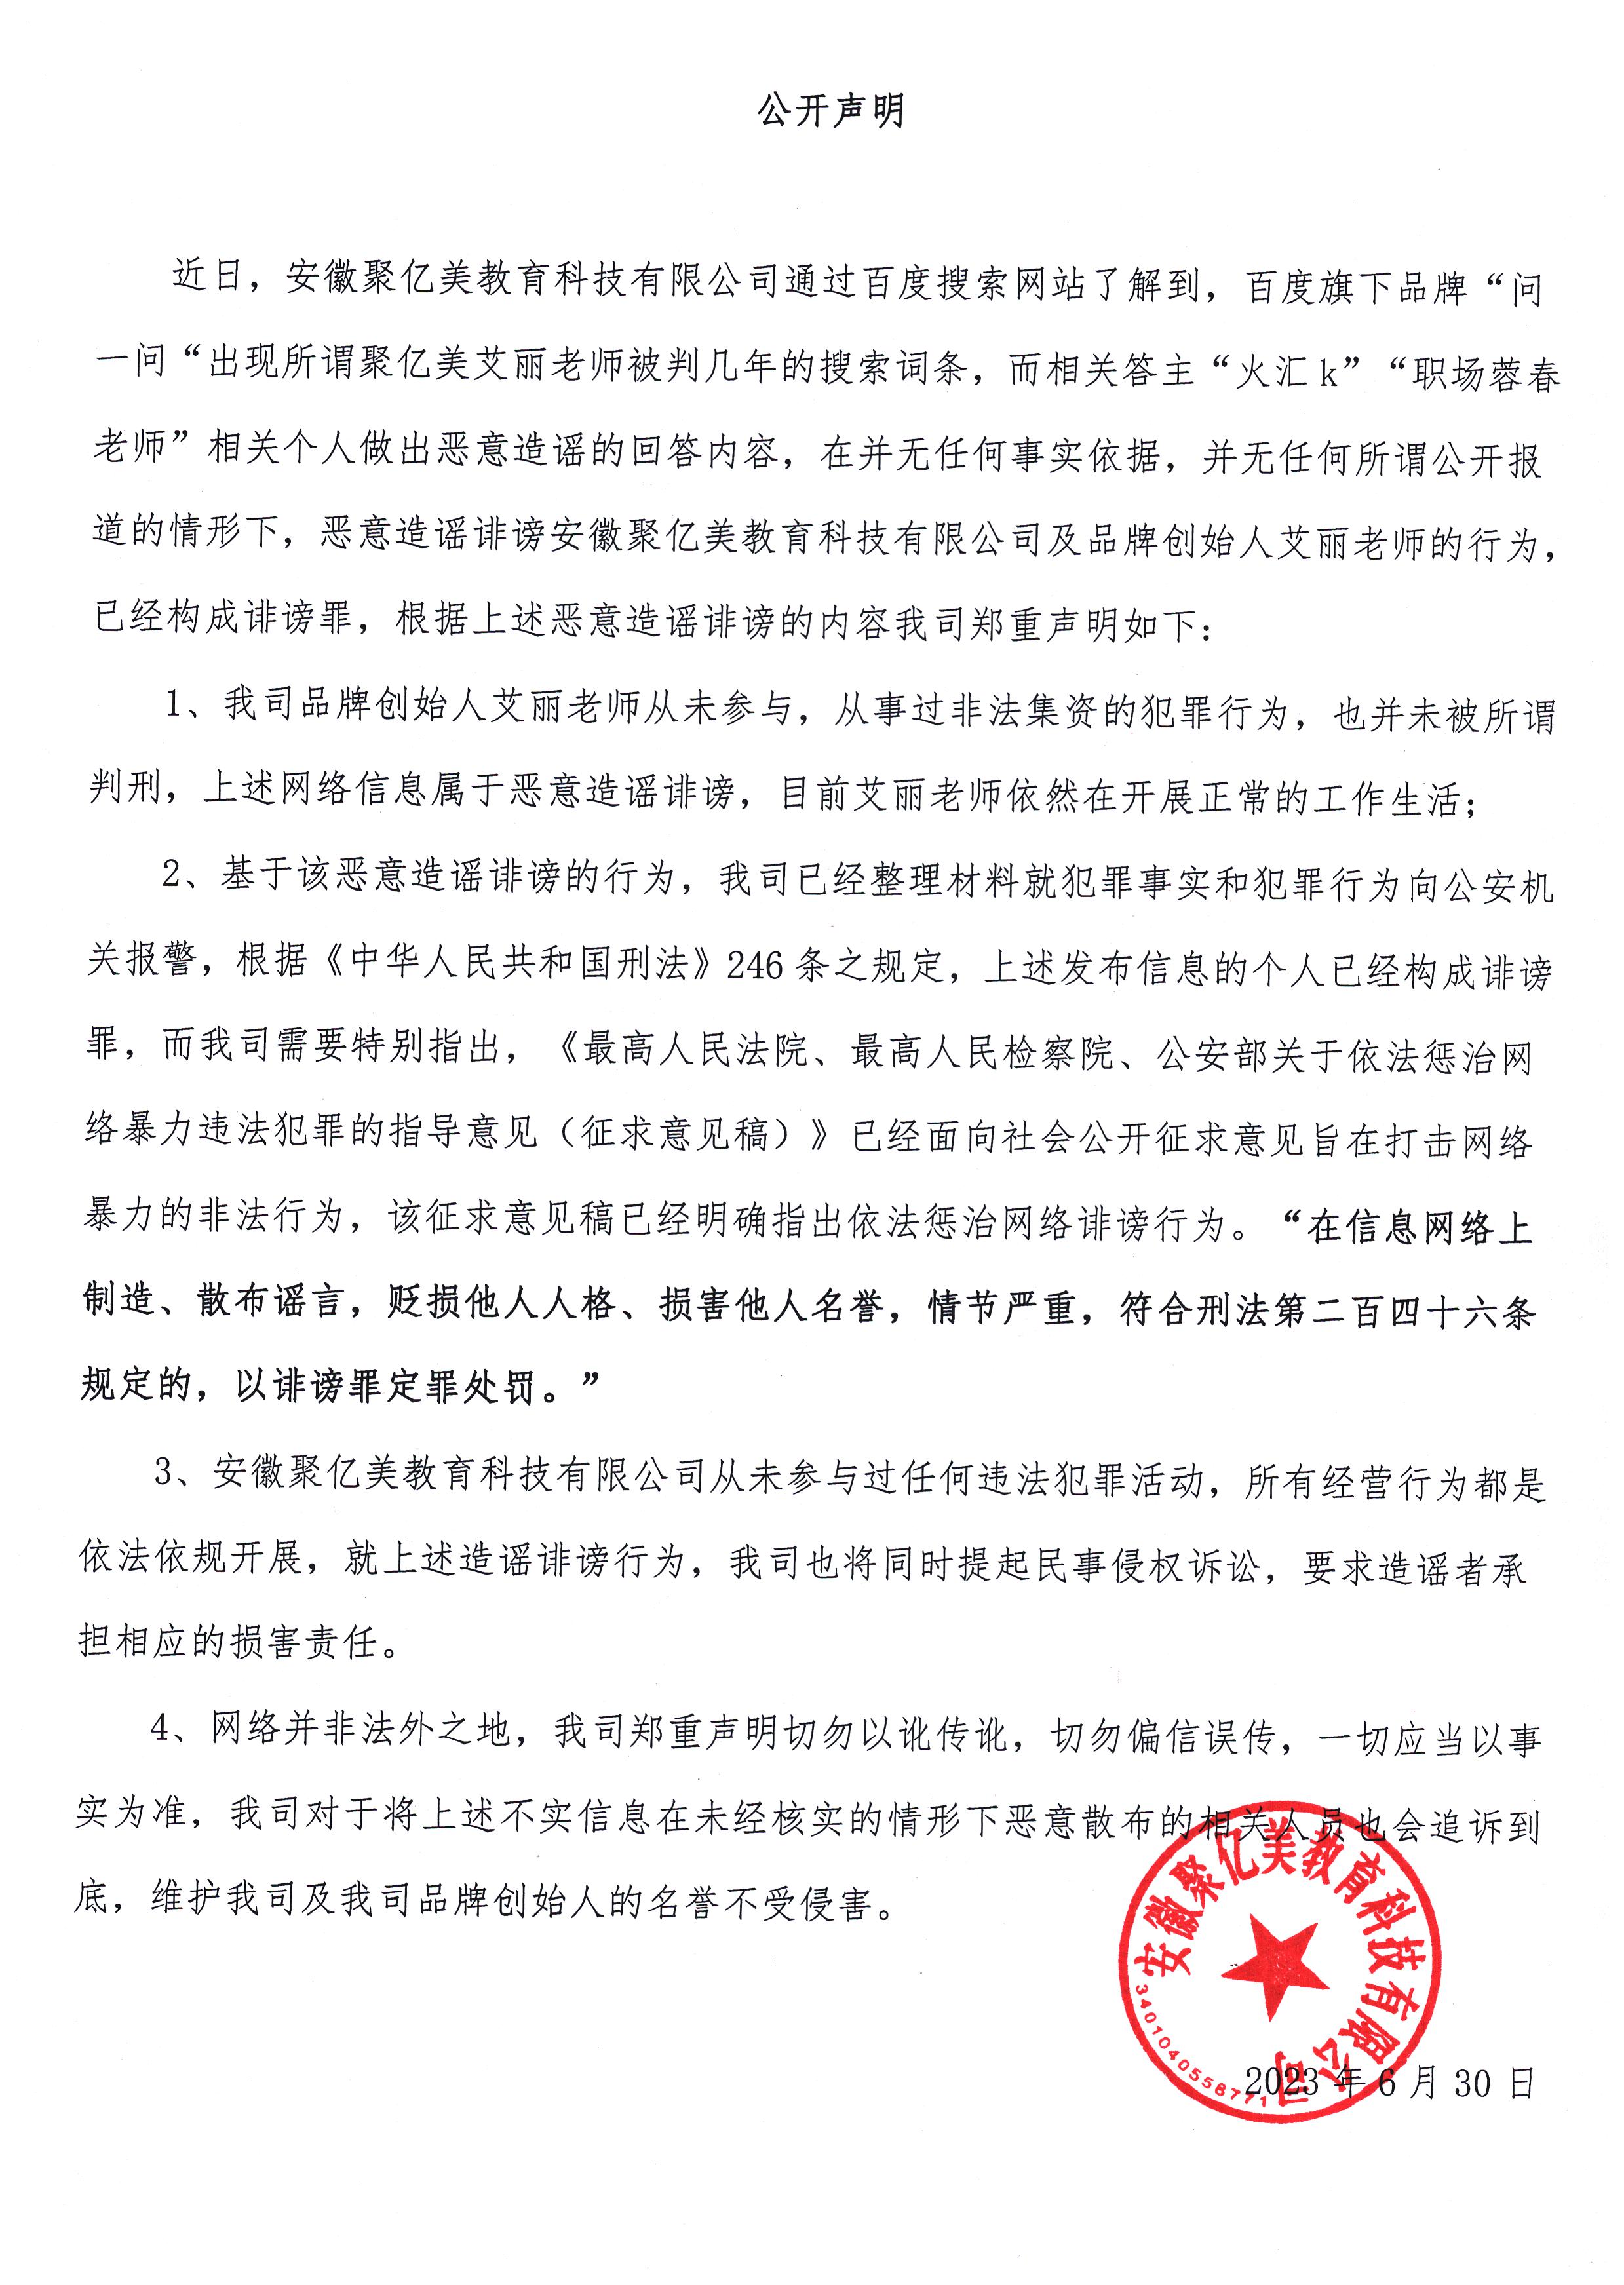 张大虎环境违法公开道歉、承诺守法声明书